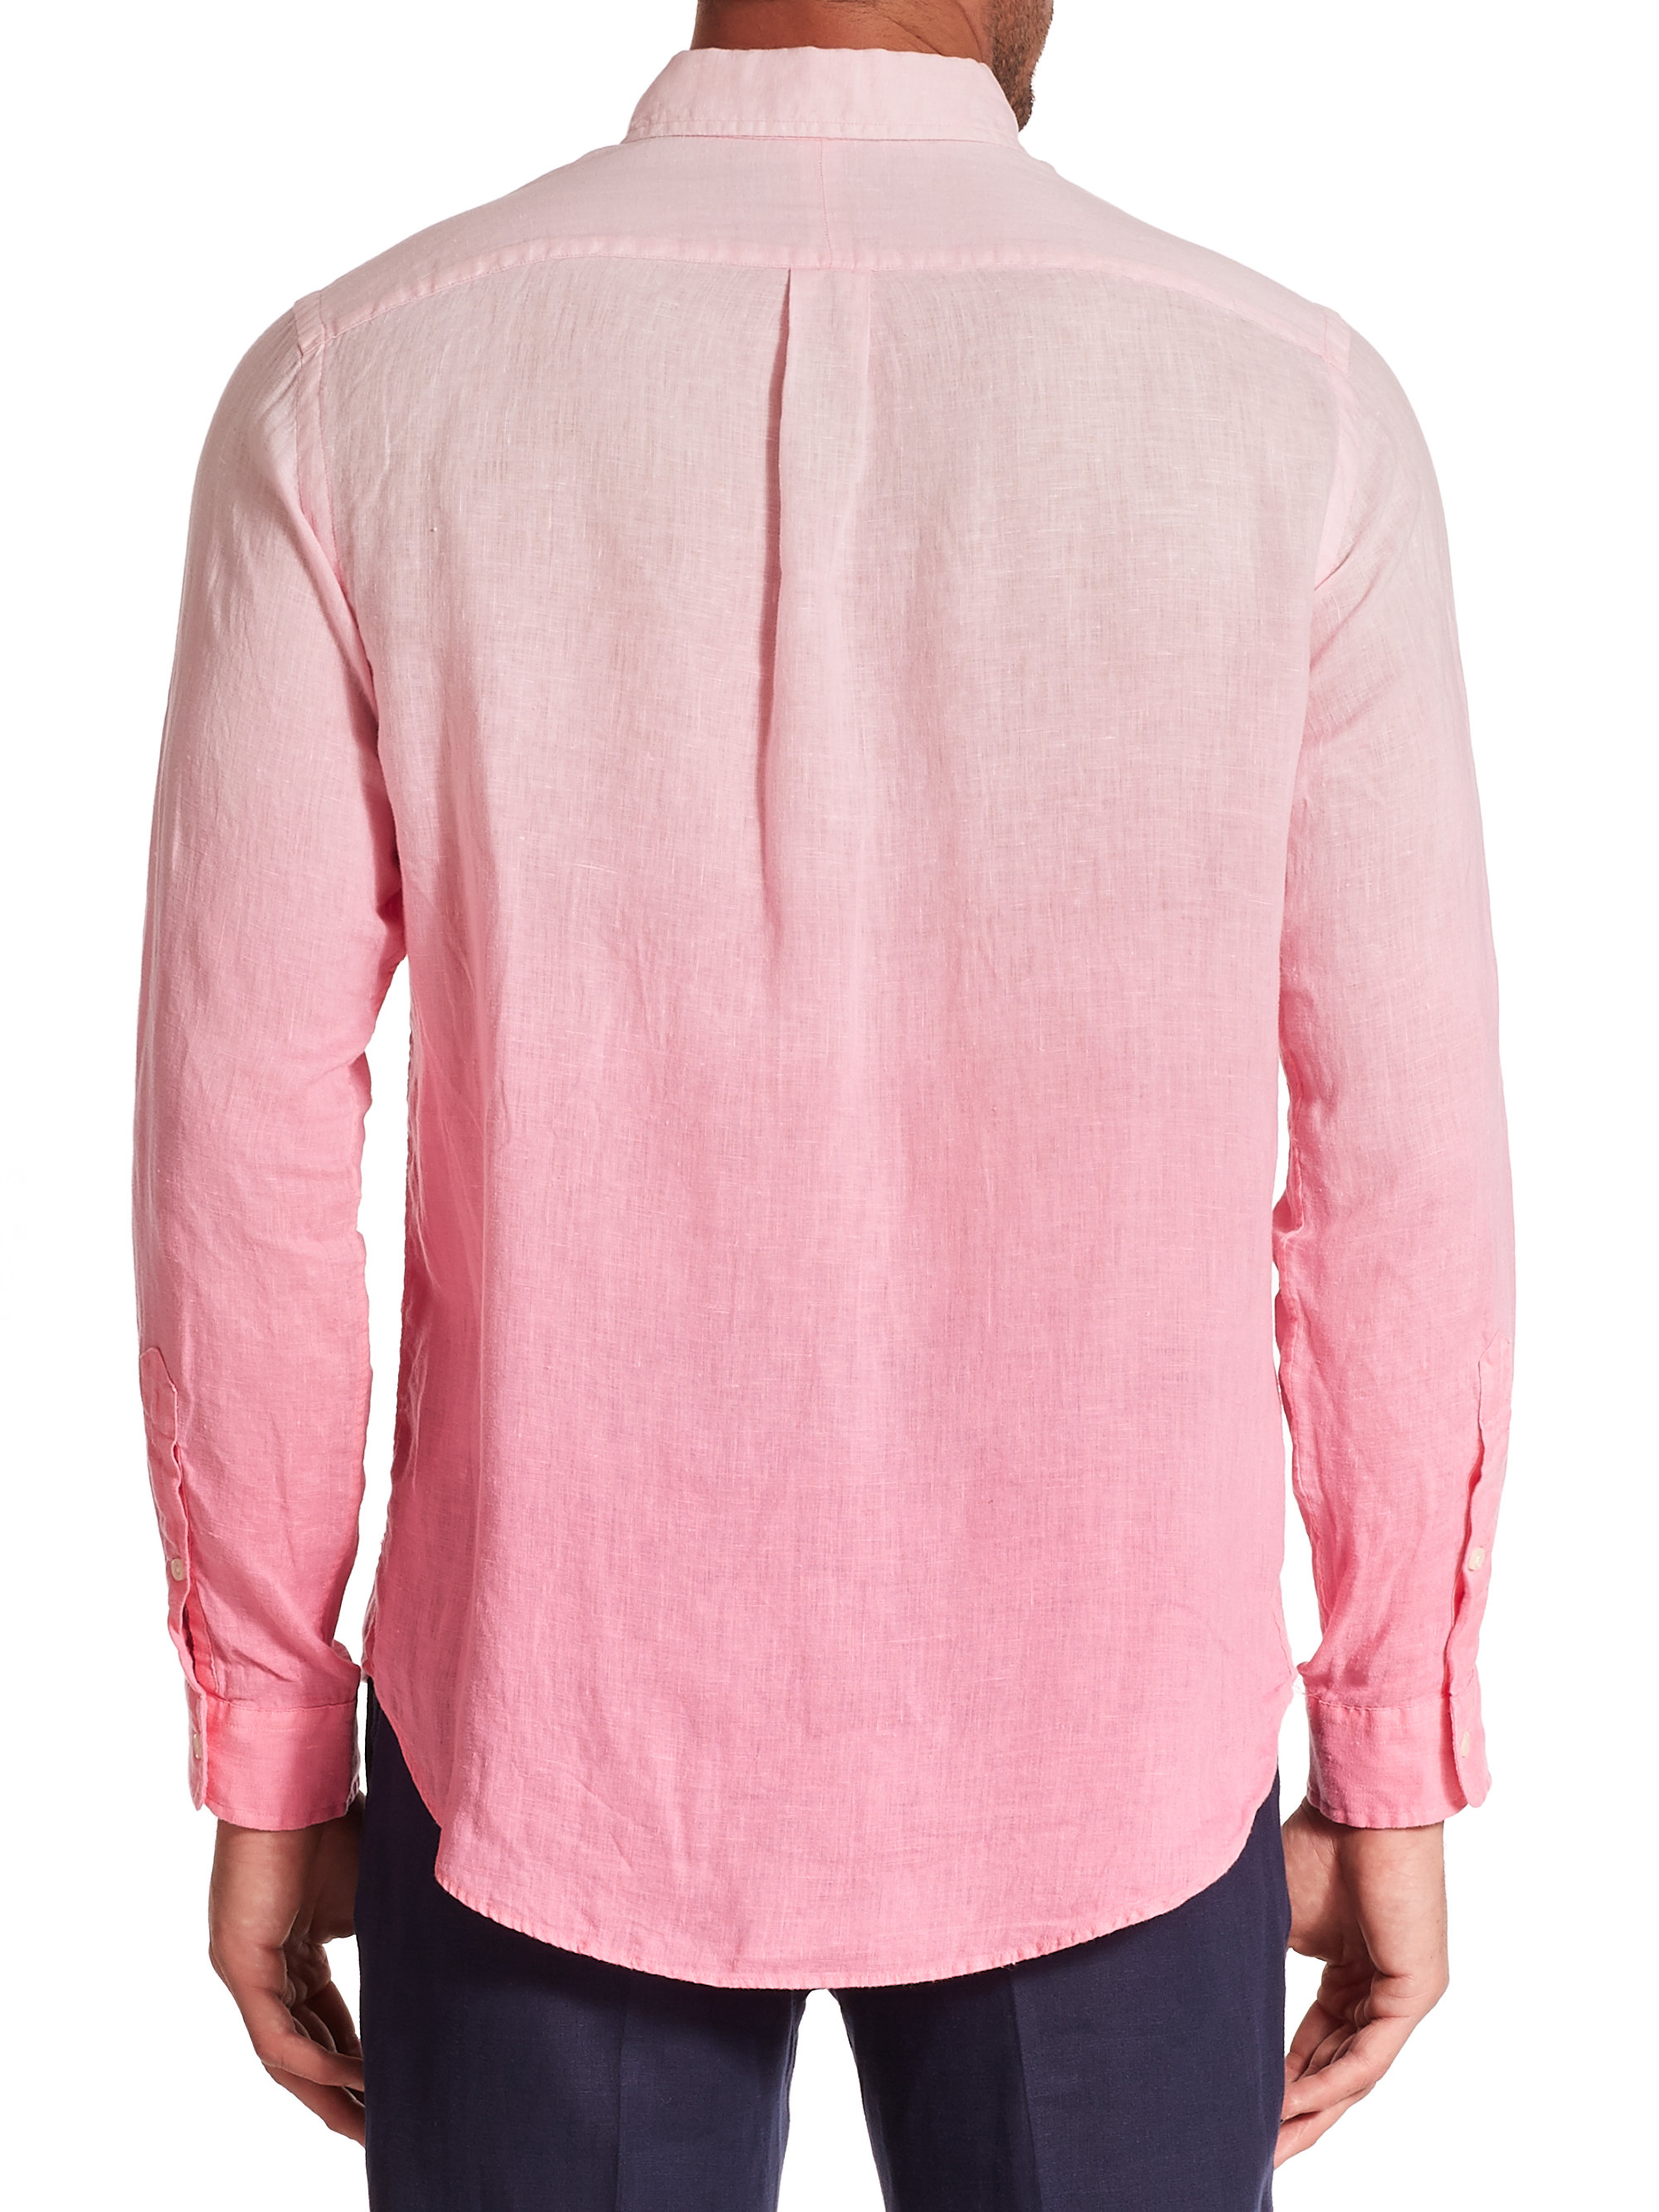 Polo Ralph Lauren Dip-Dyed Linen Sportshirt in Pink for Men - Lyst